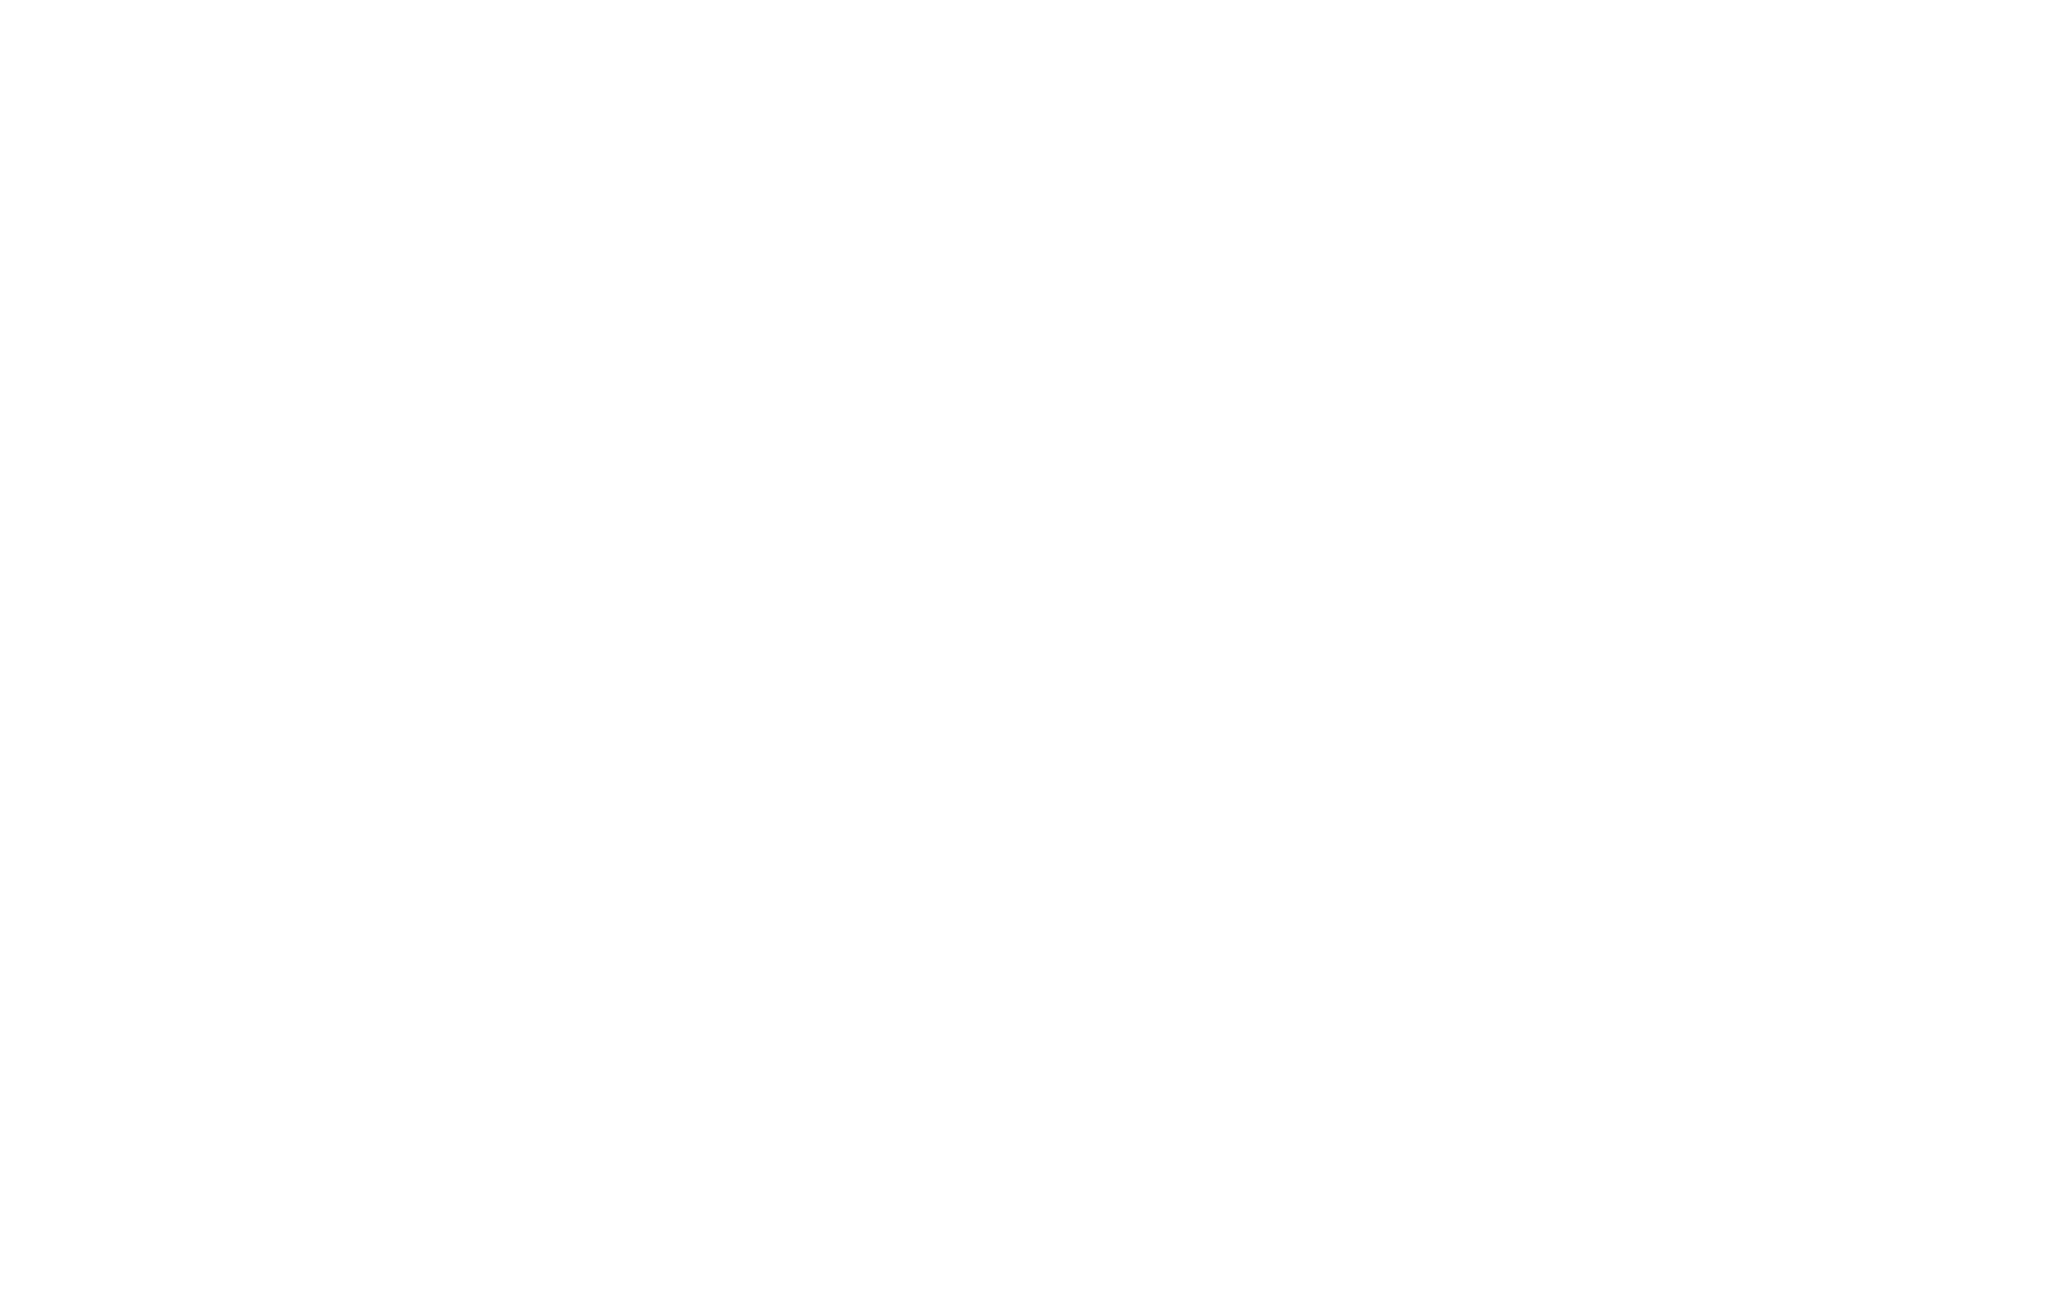 Garfield Weston Foundation website